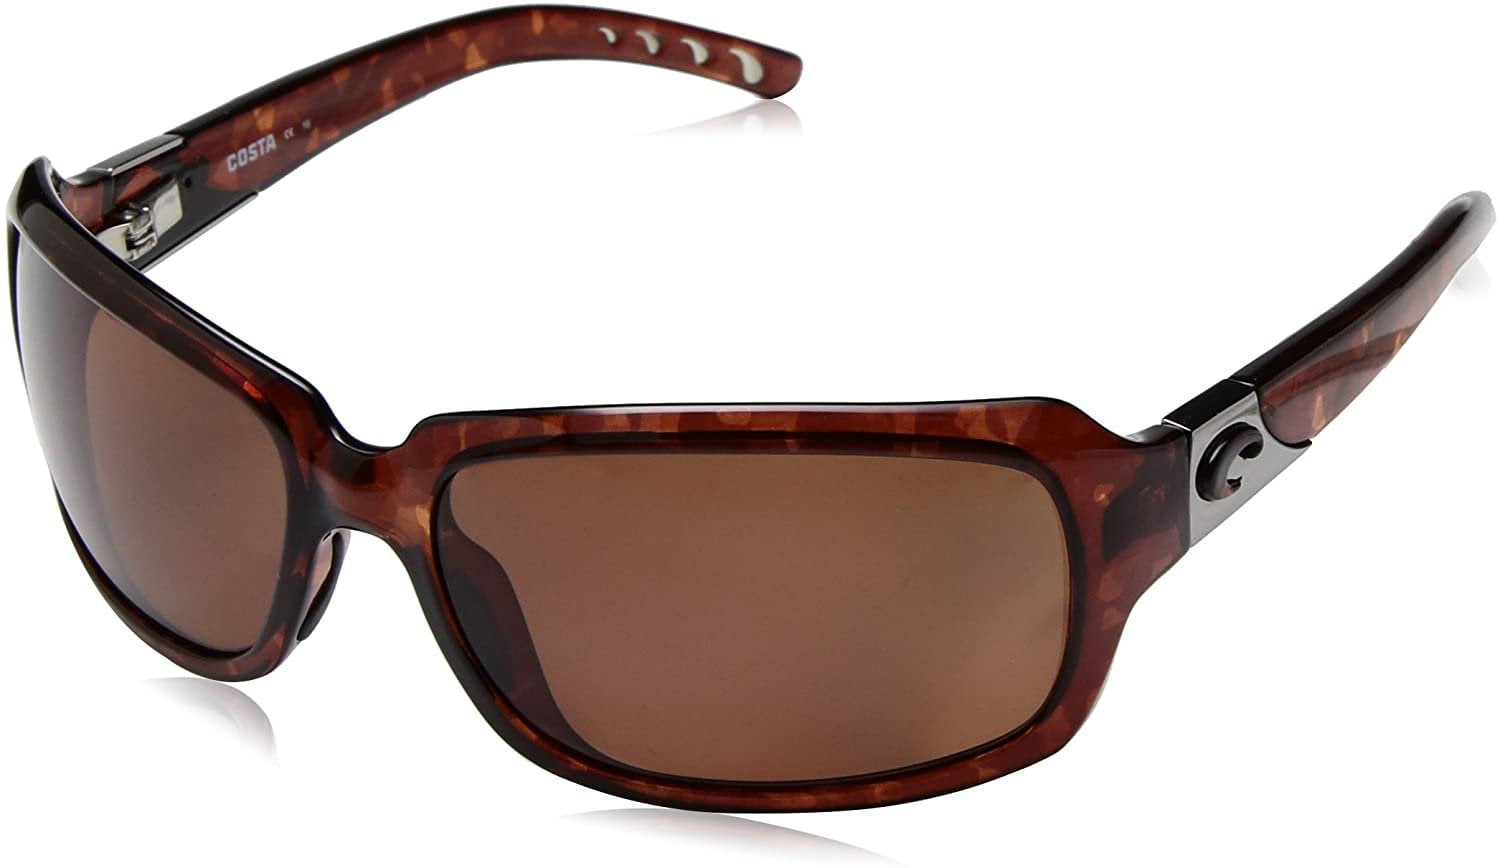 costa isabela polarized 580g sunglasses